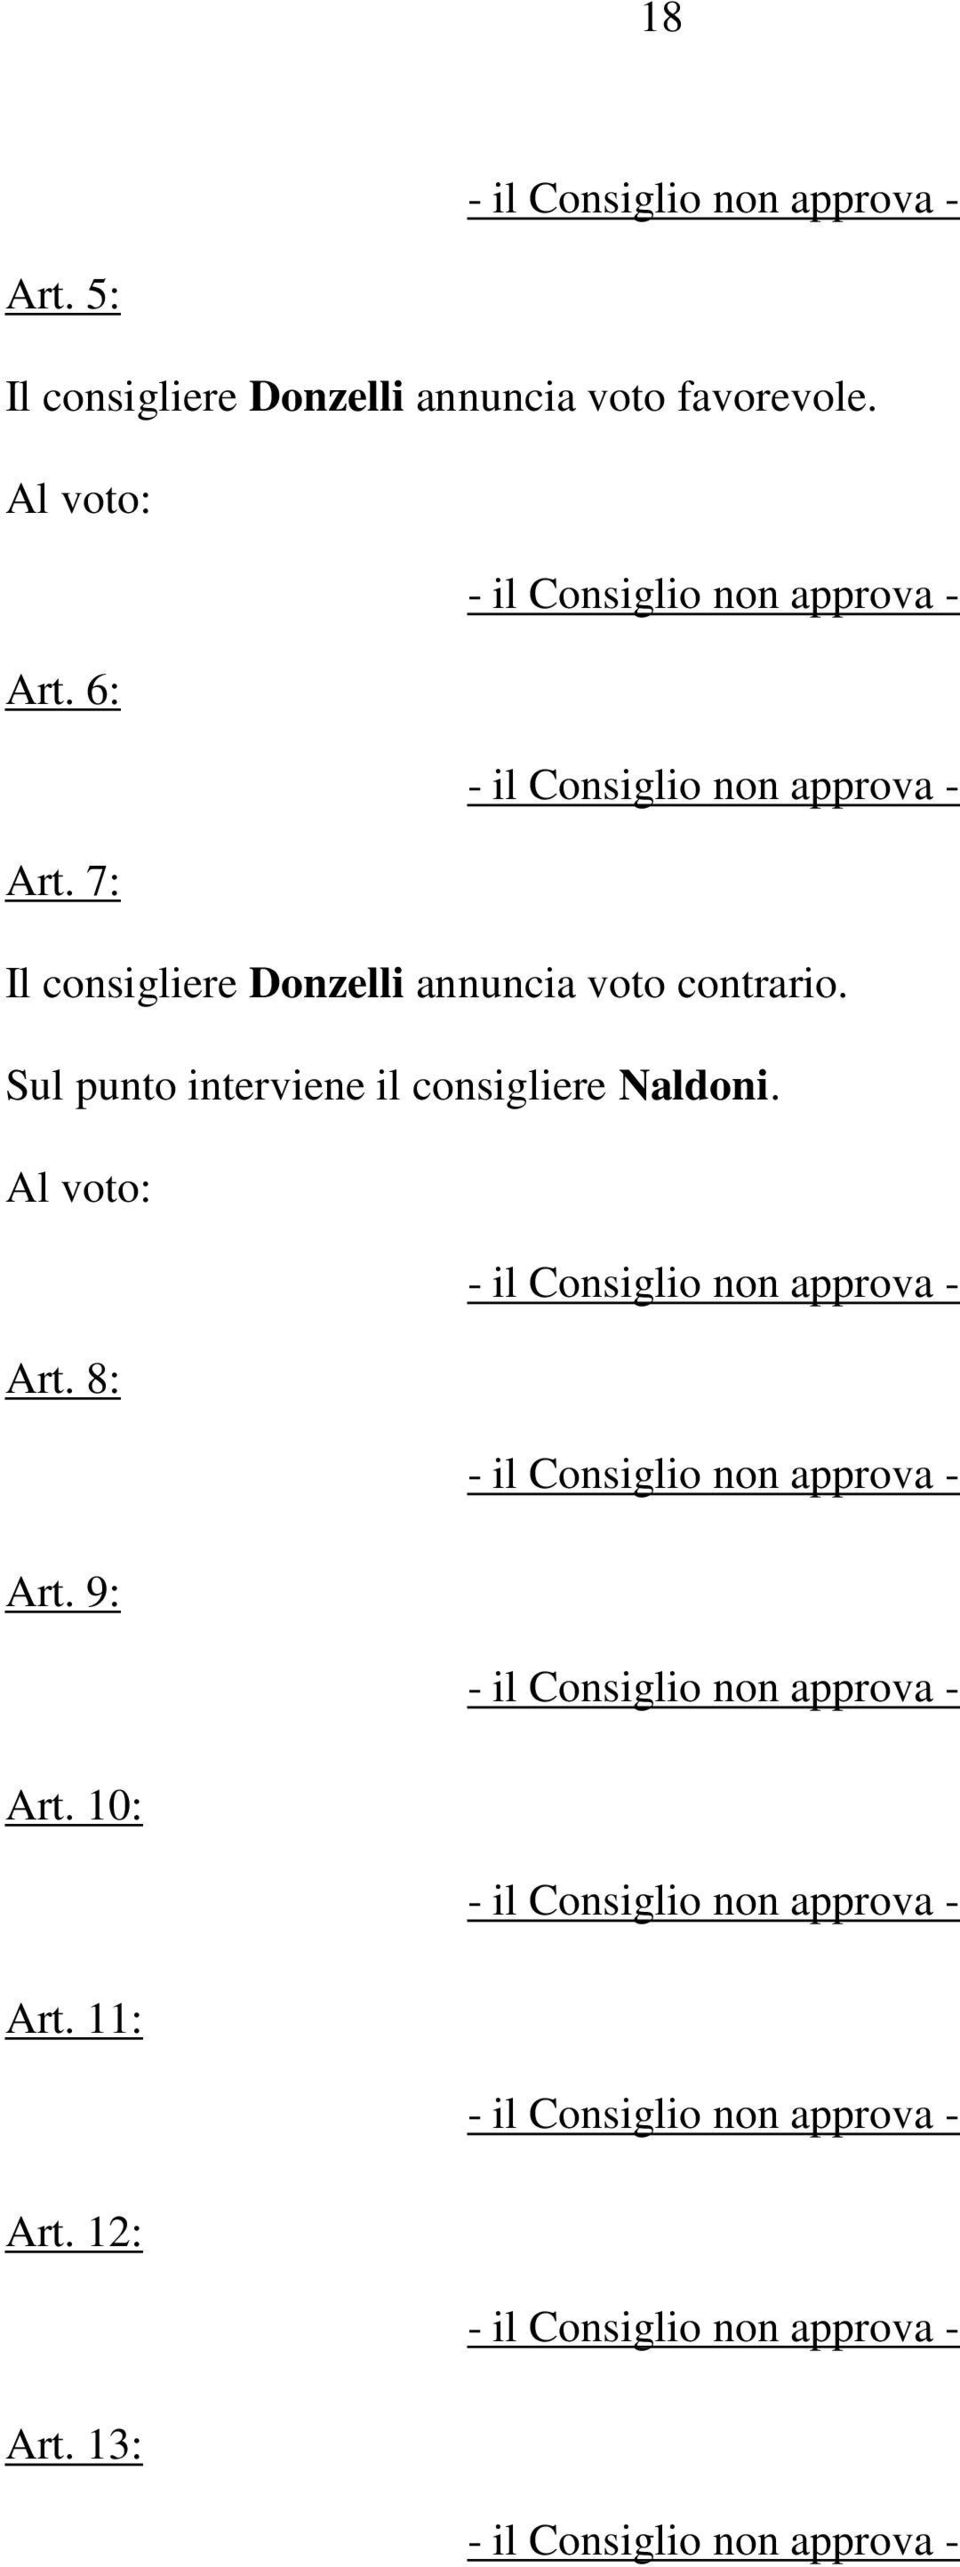 7: Il consigliere Donzelli annuncia voto contrario.